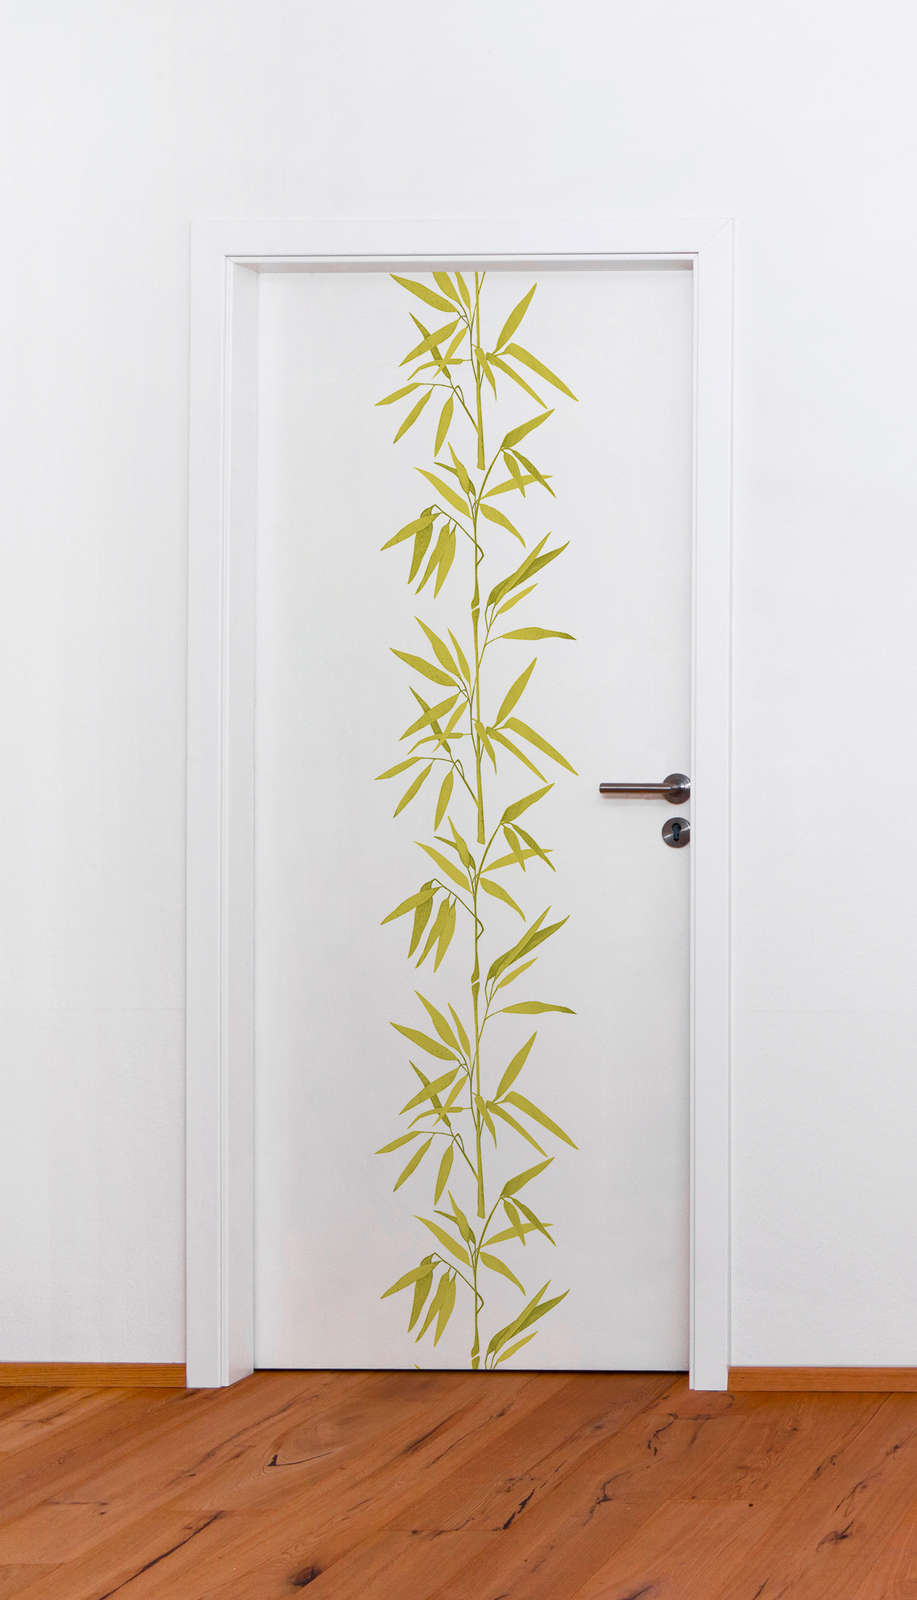             Vliestapete Weiß mit Bambus Muster – Grün, Weiß
        